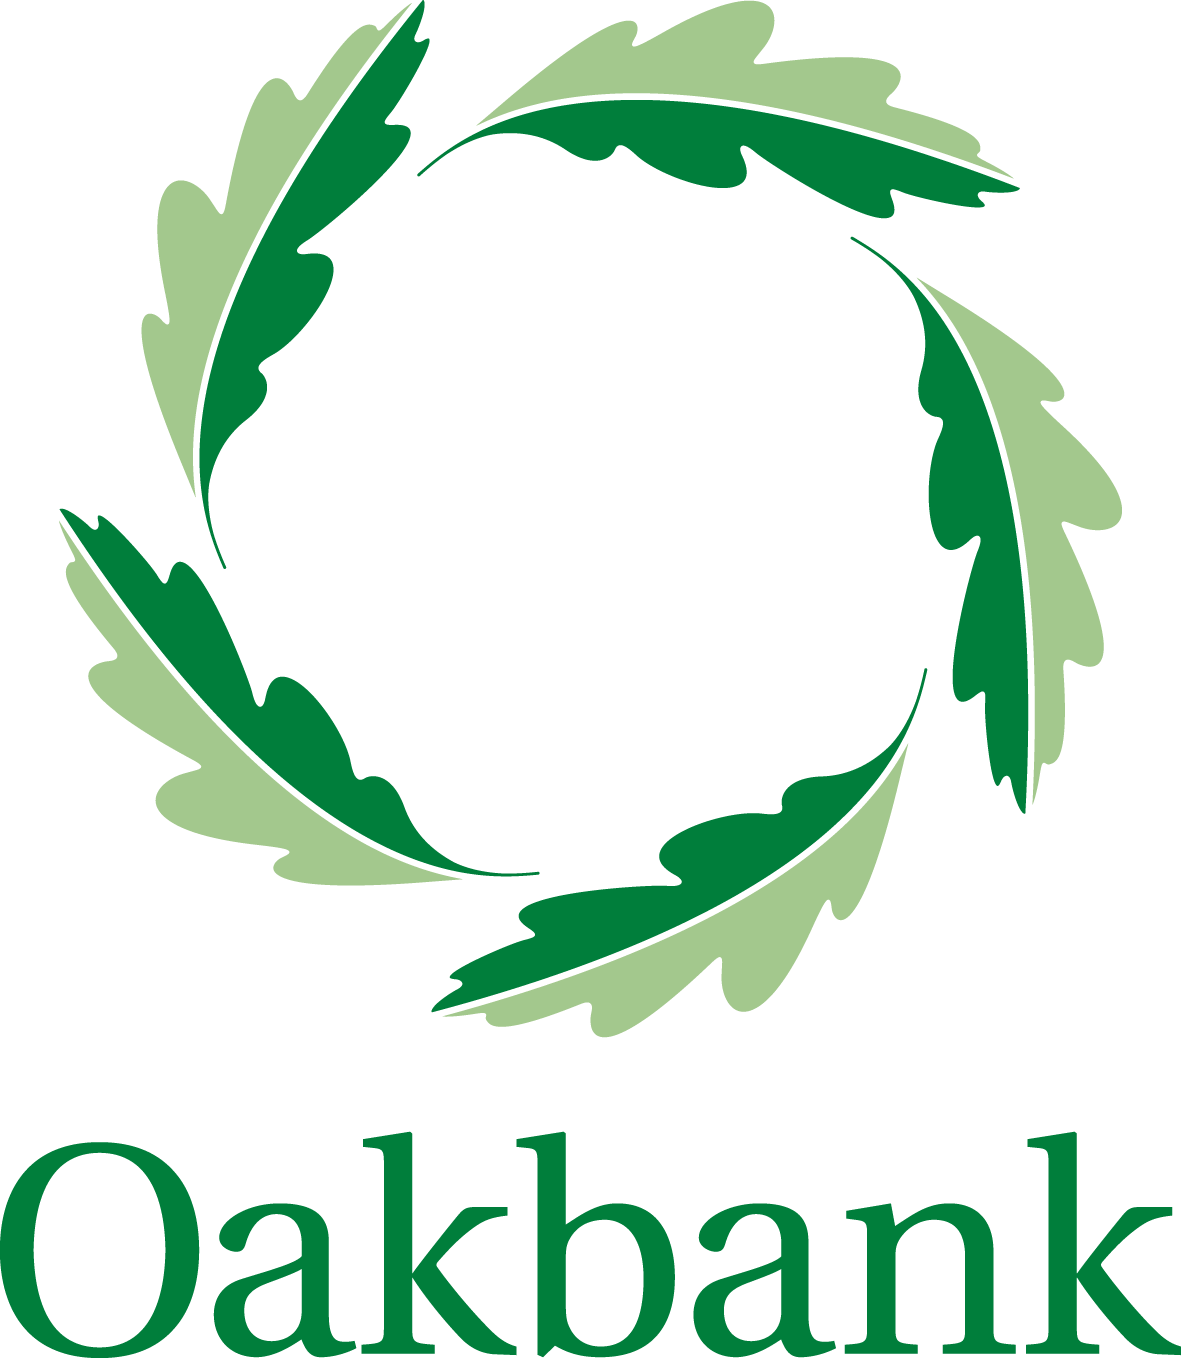 Oakbank School name